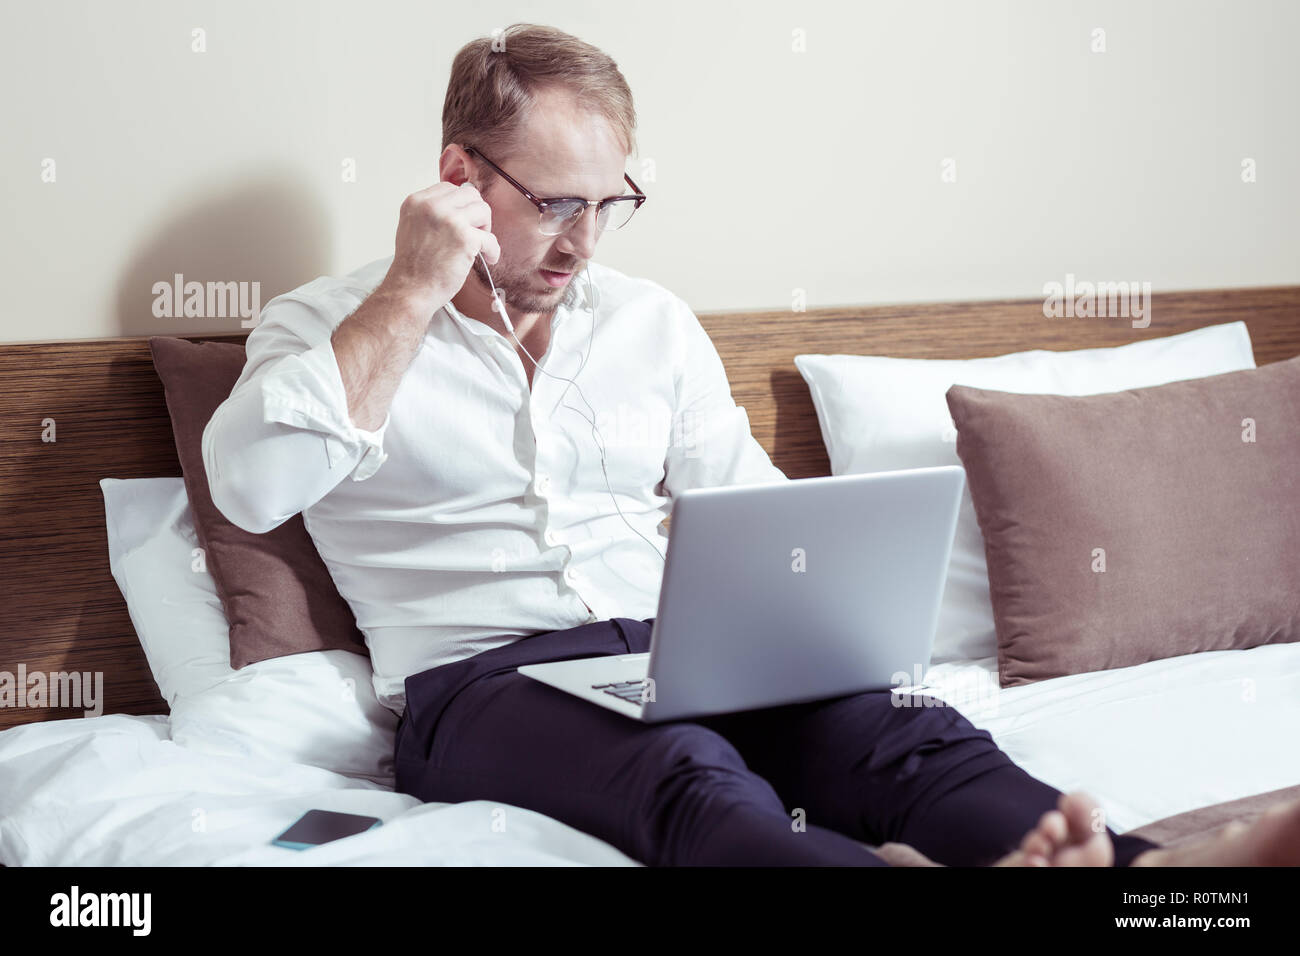 Empresario vistiendo pantalones oscuros y camisa blanca tumbado en la cama de hotel Foto de stock